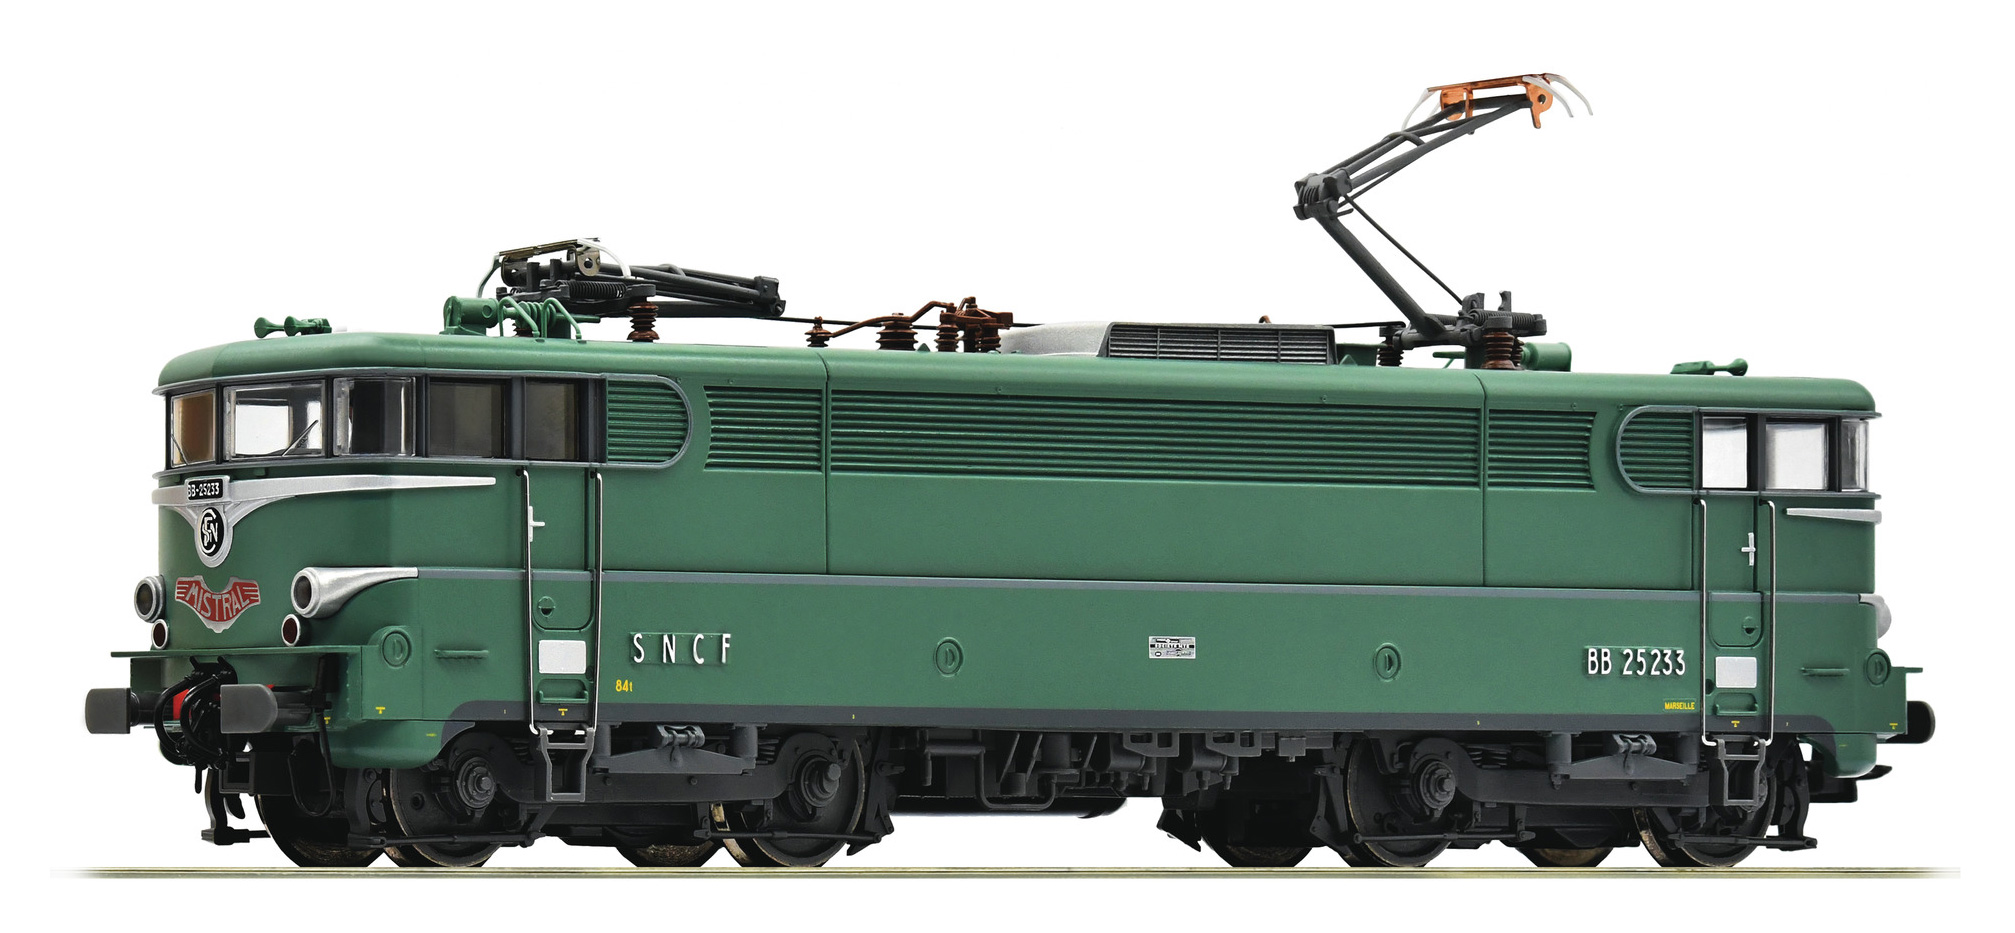 Locomotive électrique SNCF‚ BB25233 livrée verte‚ plaque Mistral‚ interface digitale Plux 16